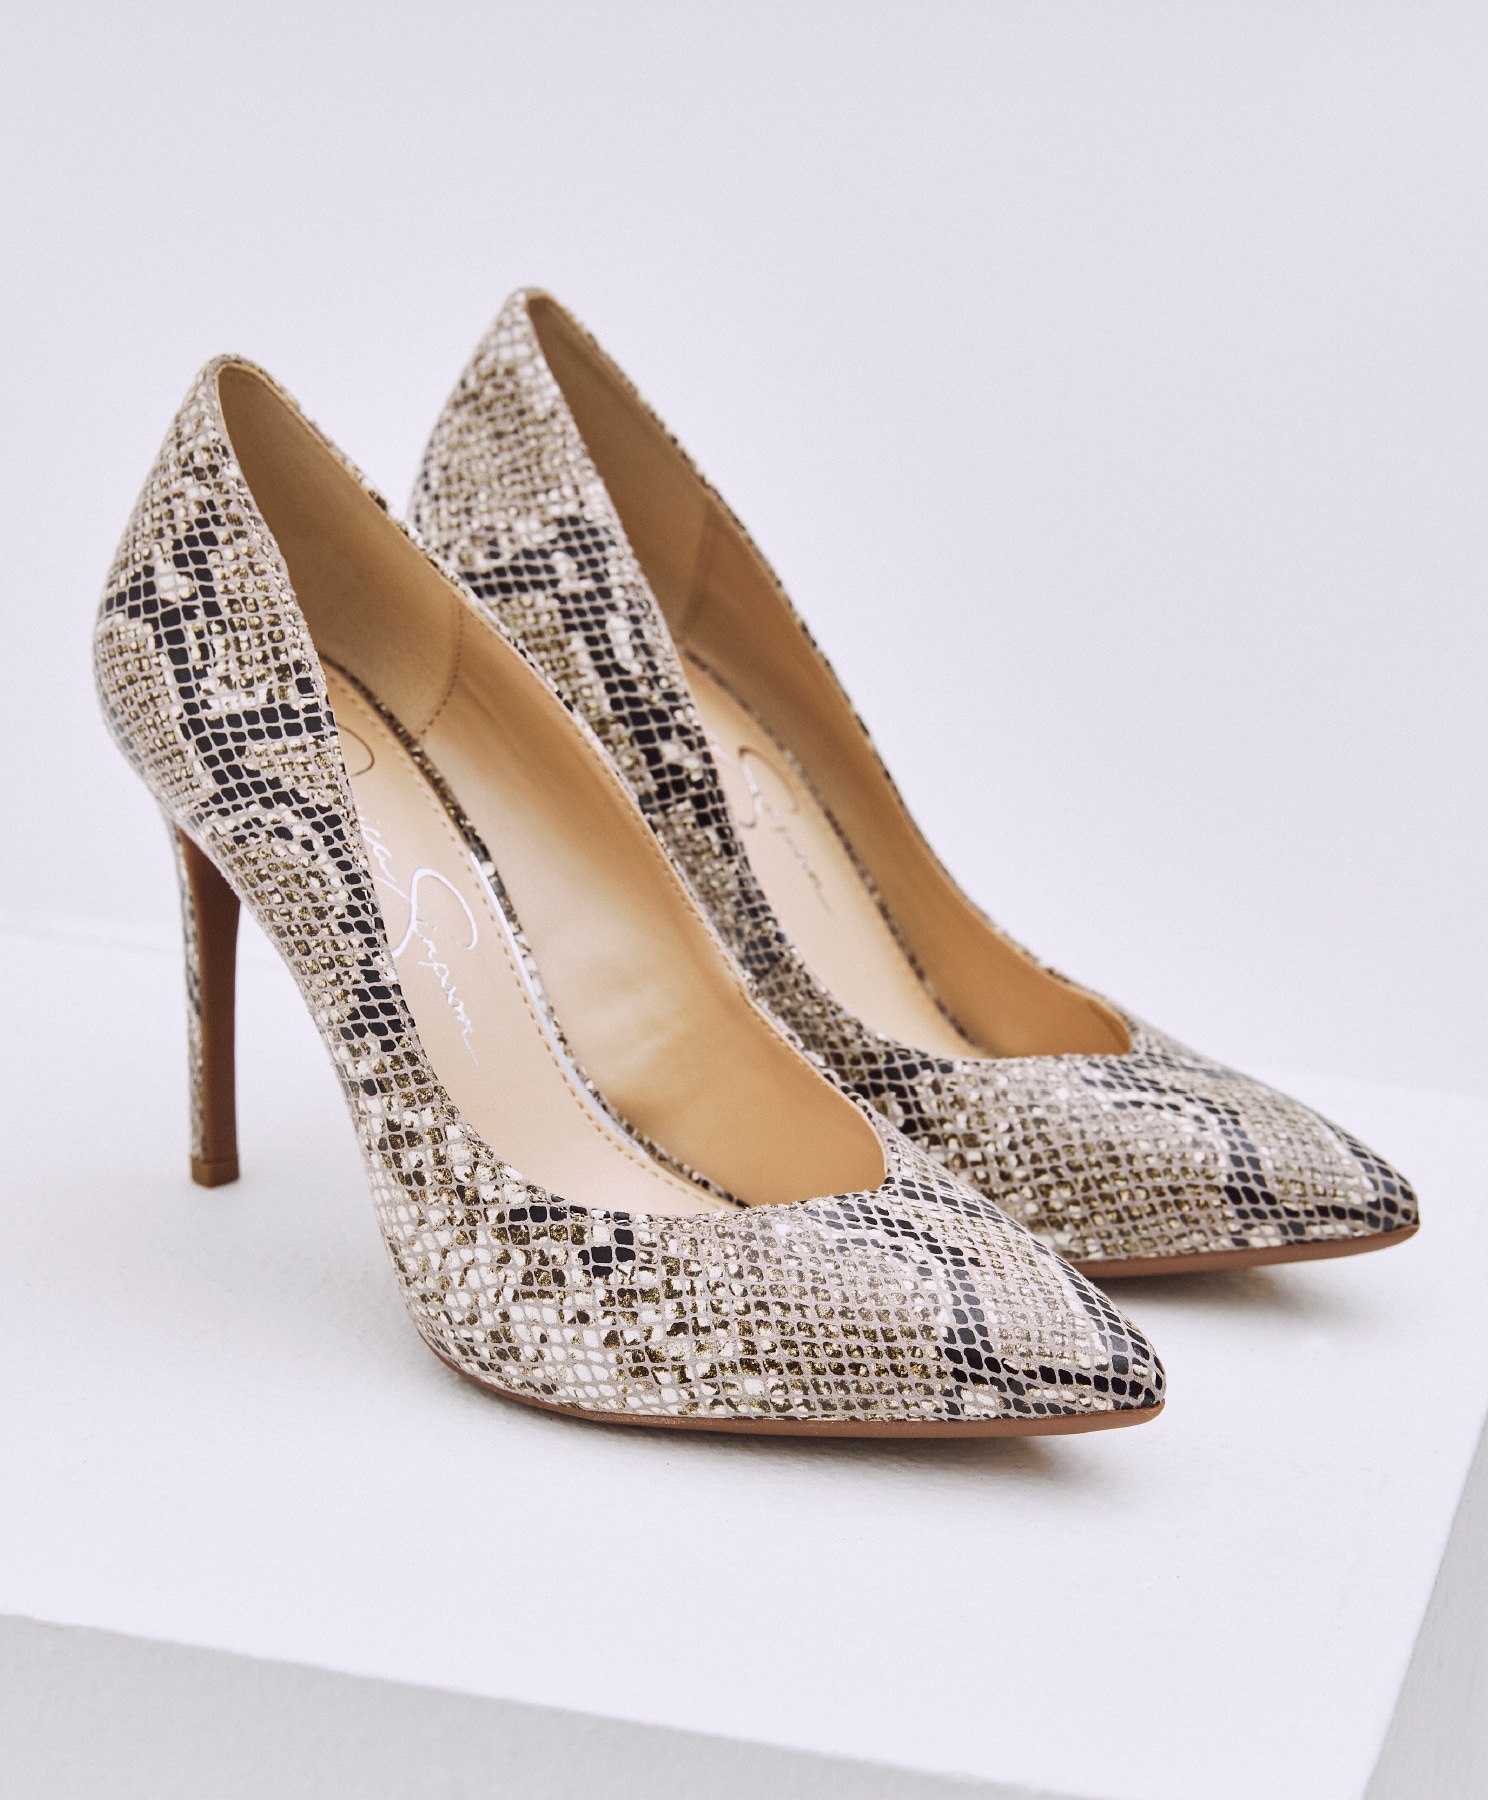 shoe department silver heels